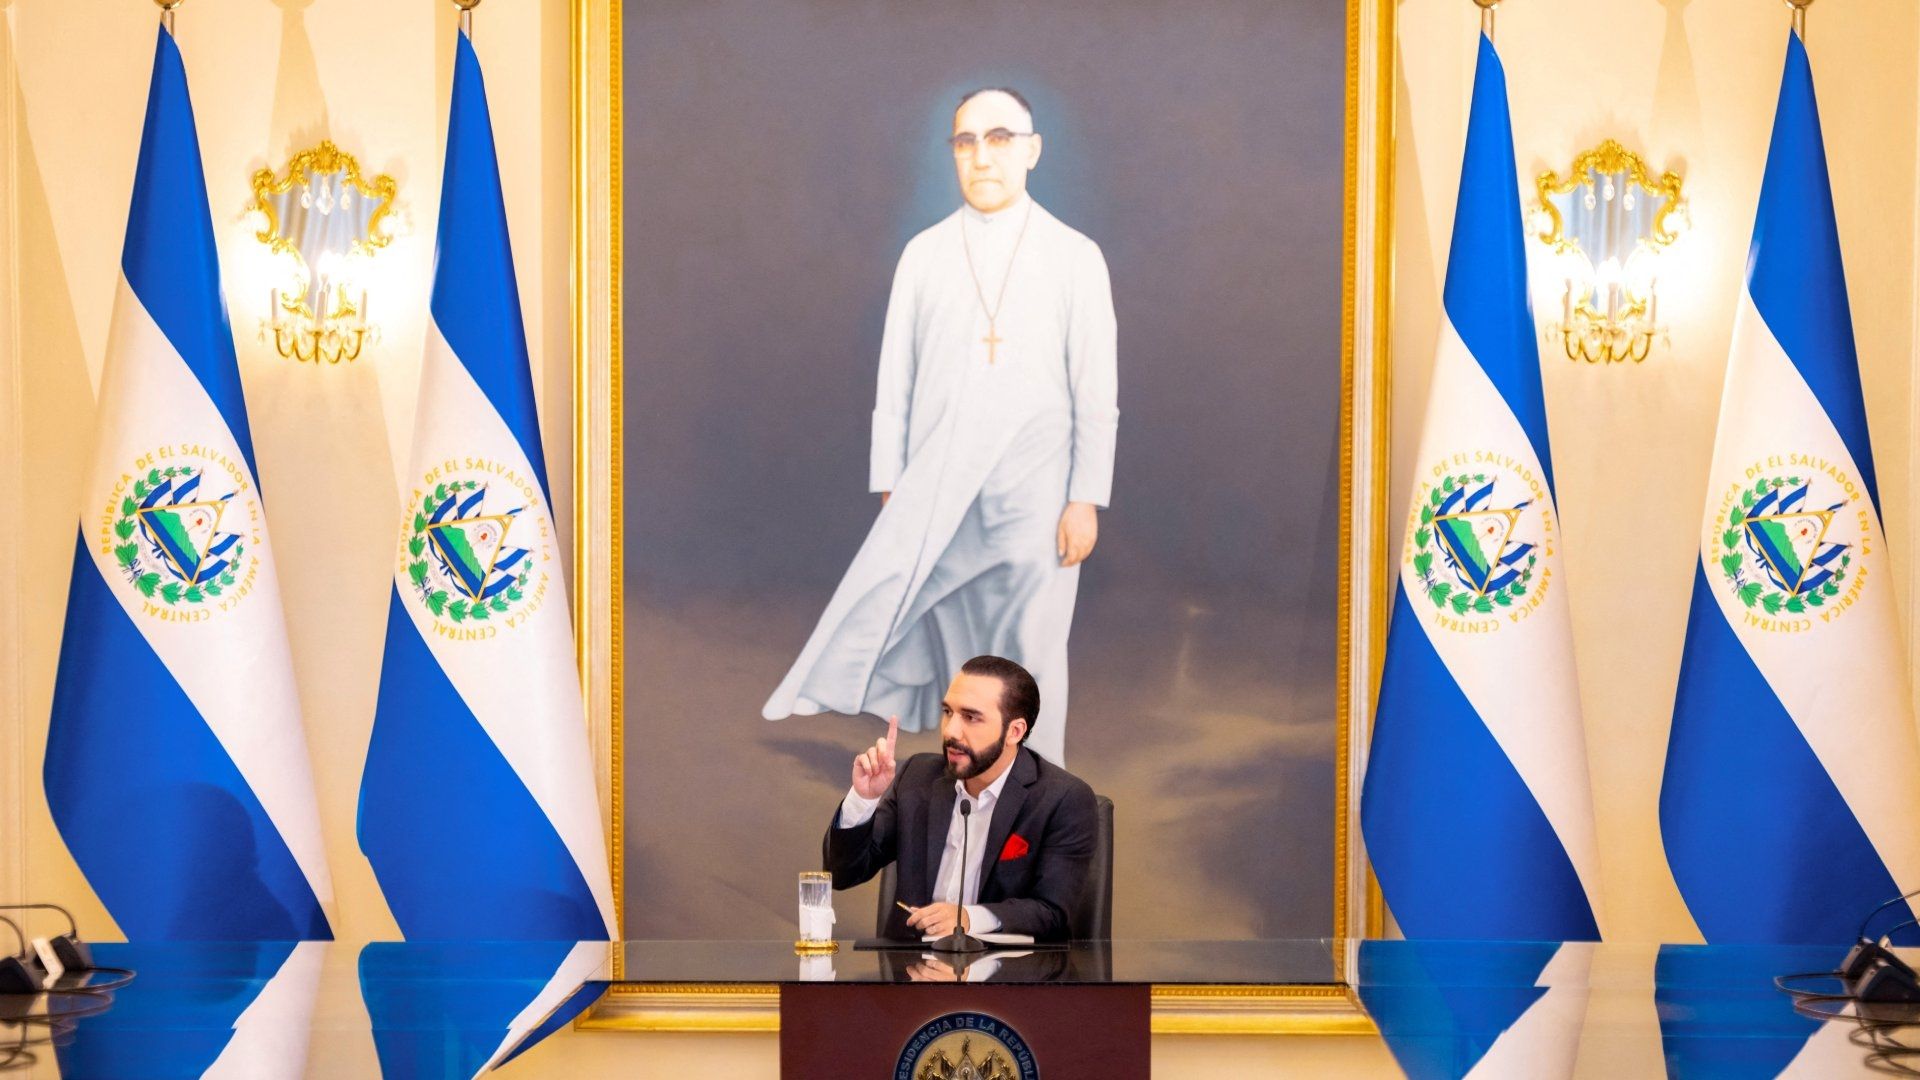 Bukele Cambia Descripción en X de Presidente de El Salvador a 'Rey Filósofo'